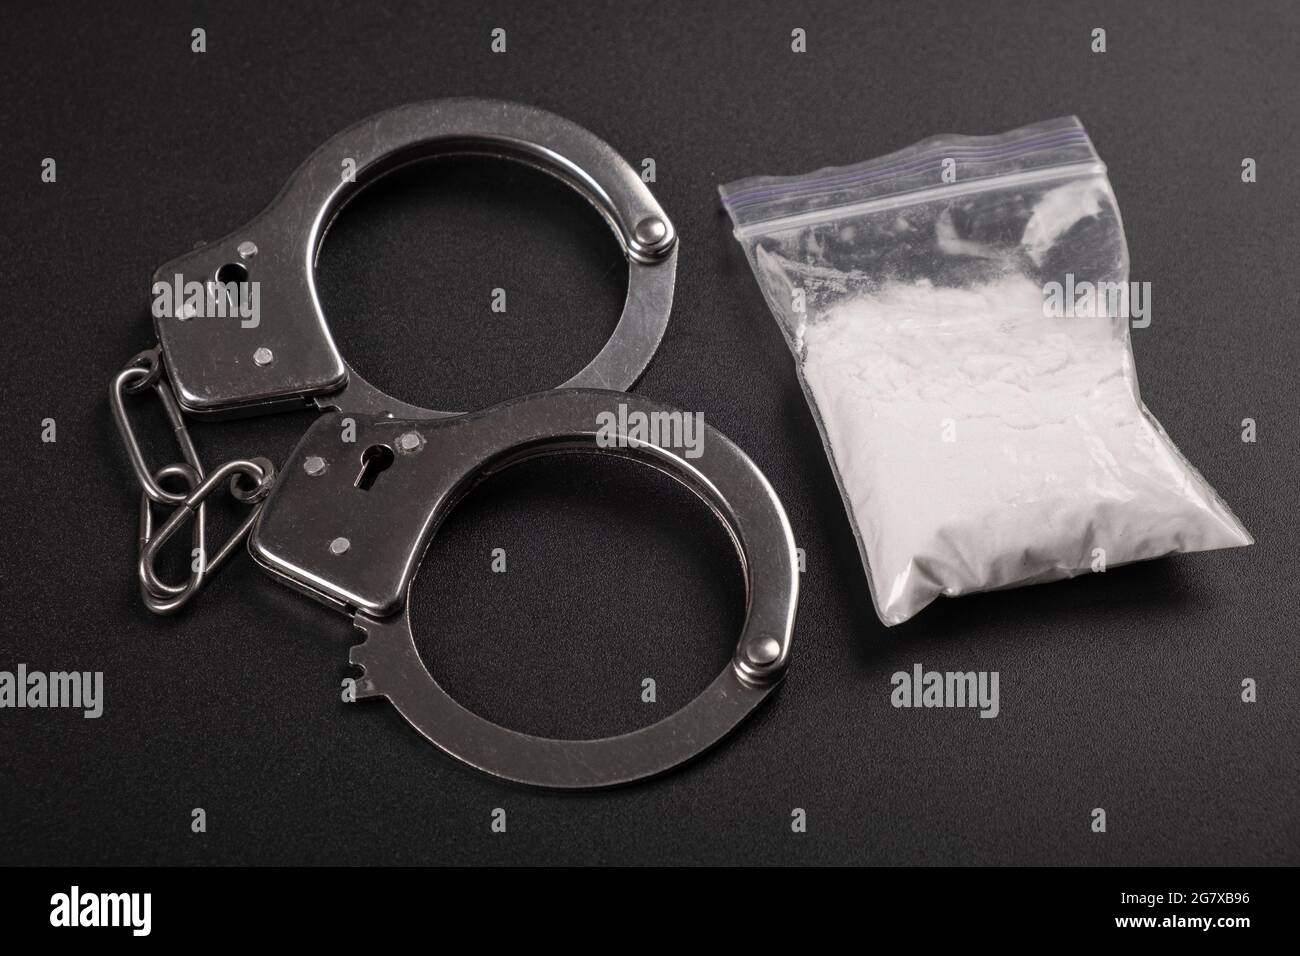 vue de dessus de la répression contre la drogue, des menottes et de la poudre de cocaïne blanche. Banque D'Images